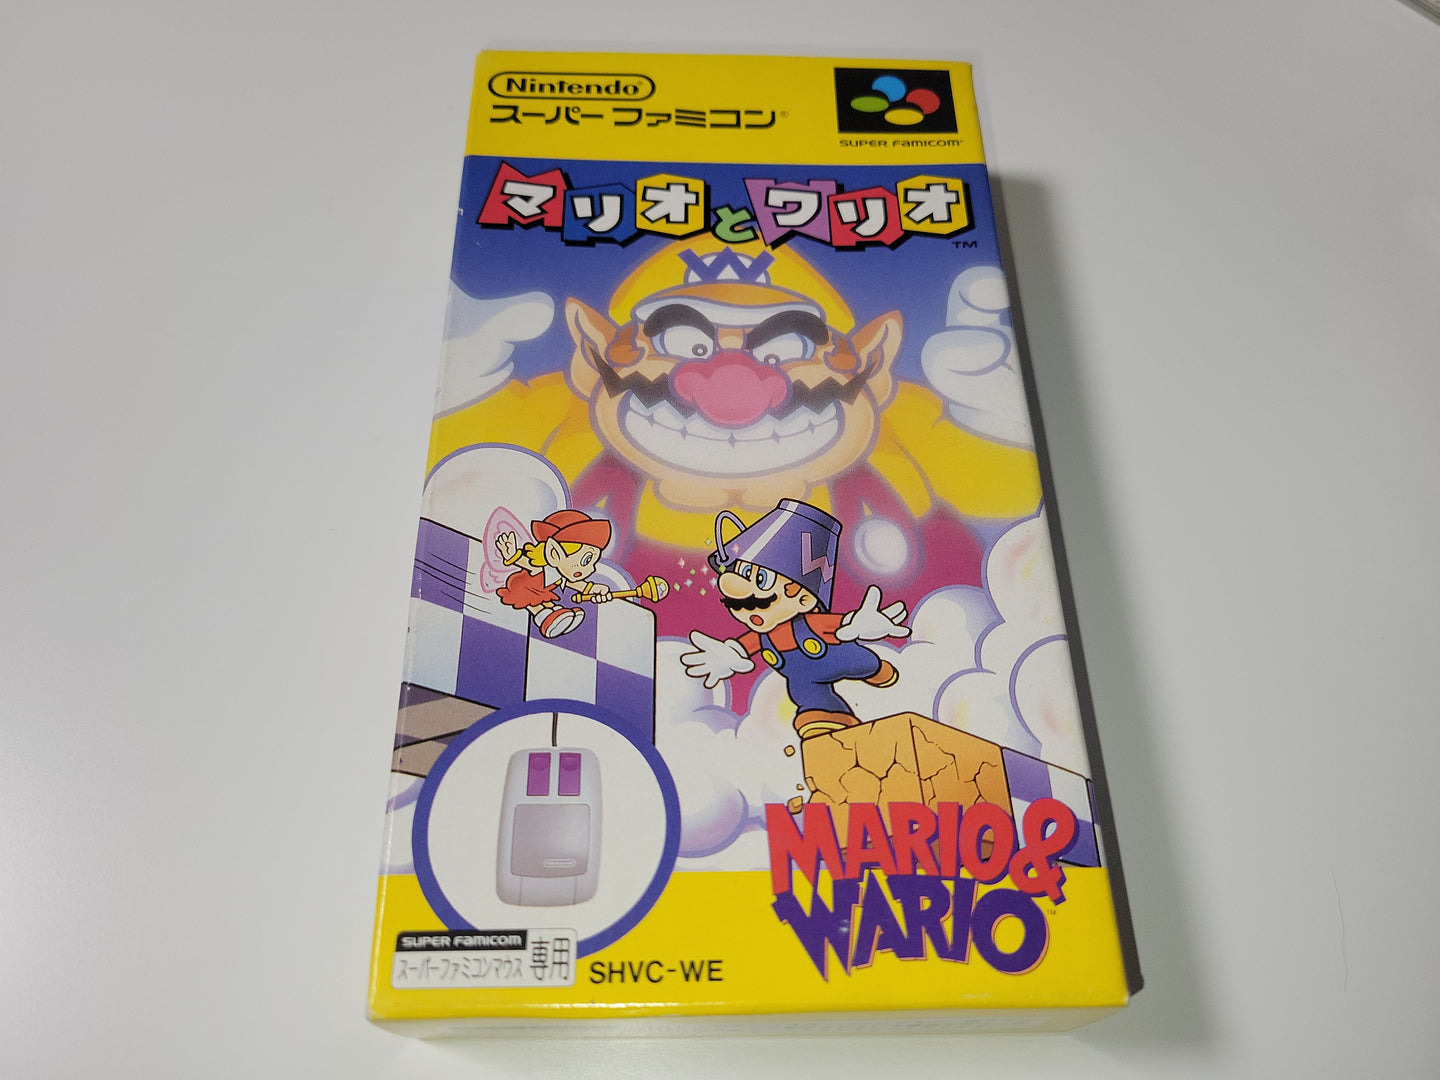 Mario & Wario - Nintendo Sfc Super Famicom